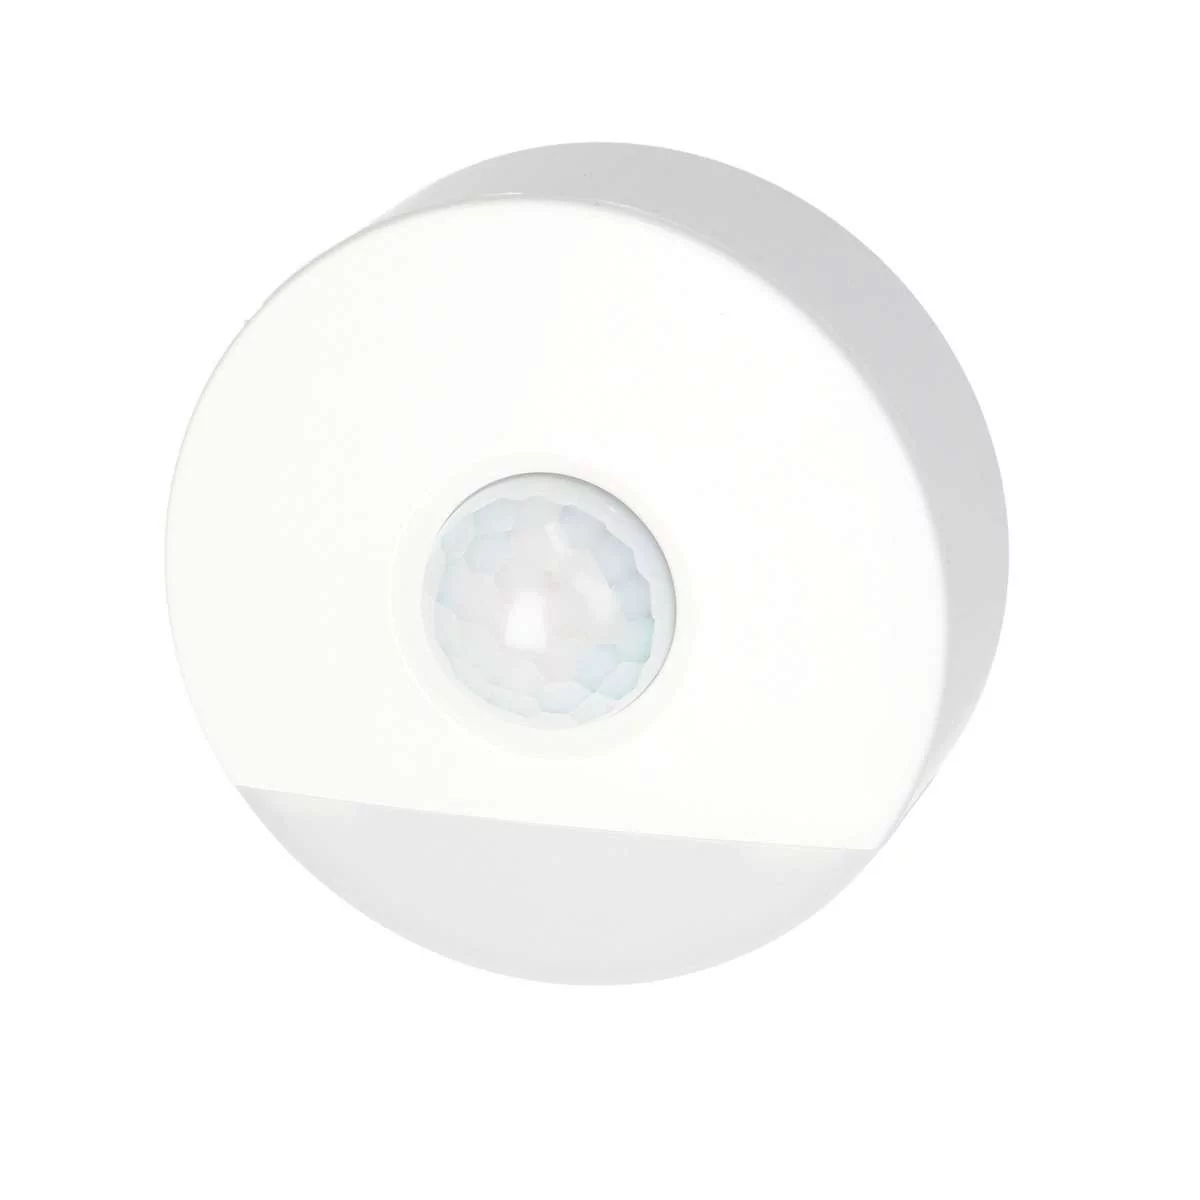 Orno Lampka nocna LED z czujnikiem ruchu, z funkcją korytarzową 0,2W/3W, 200lm